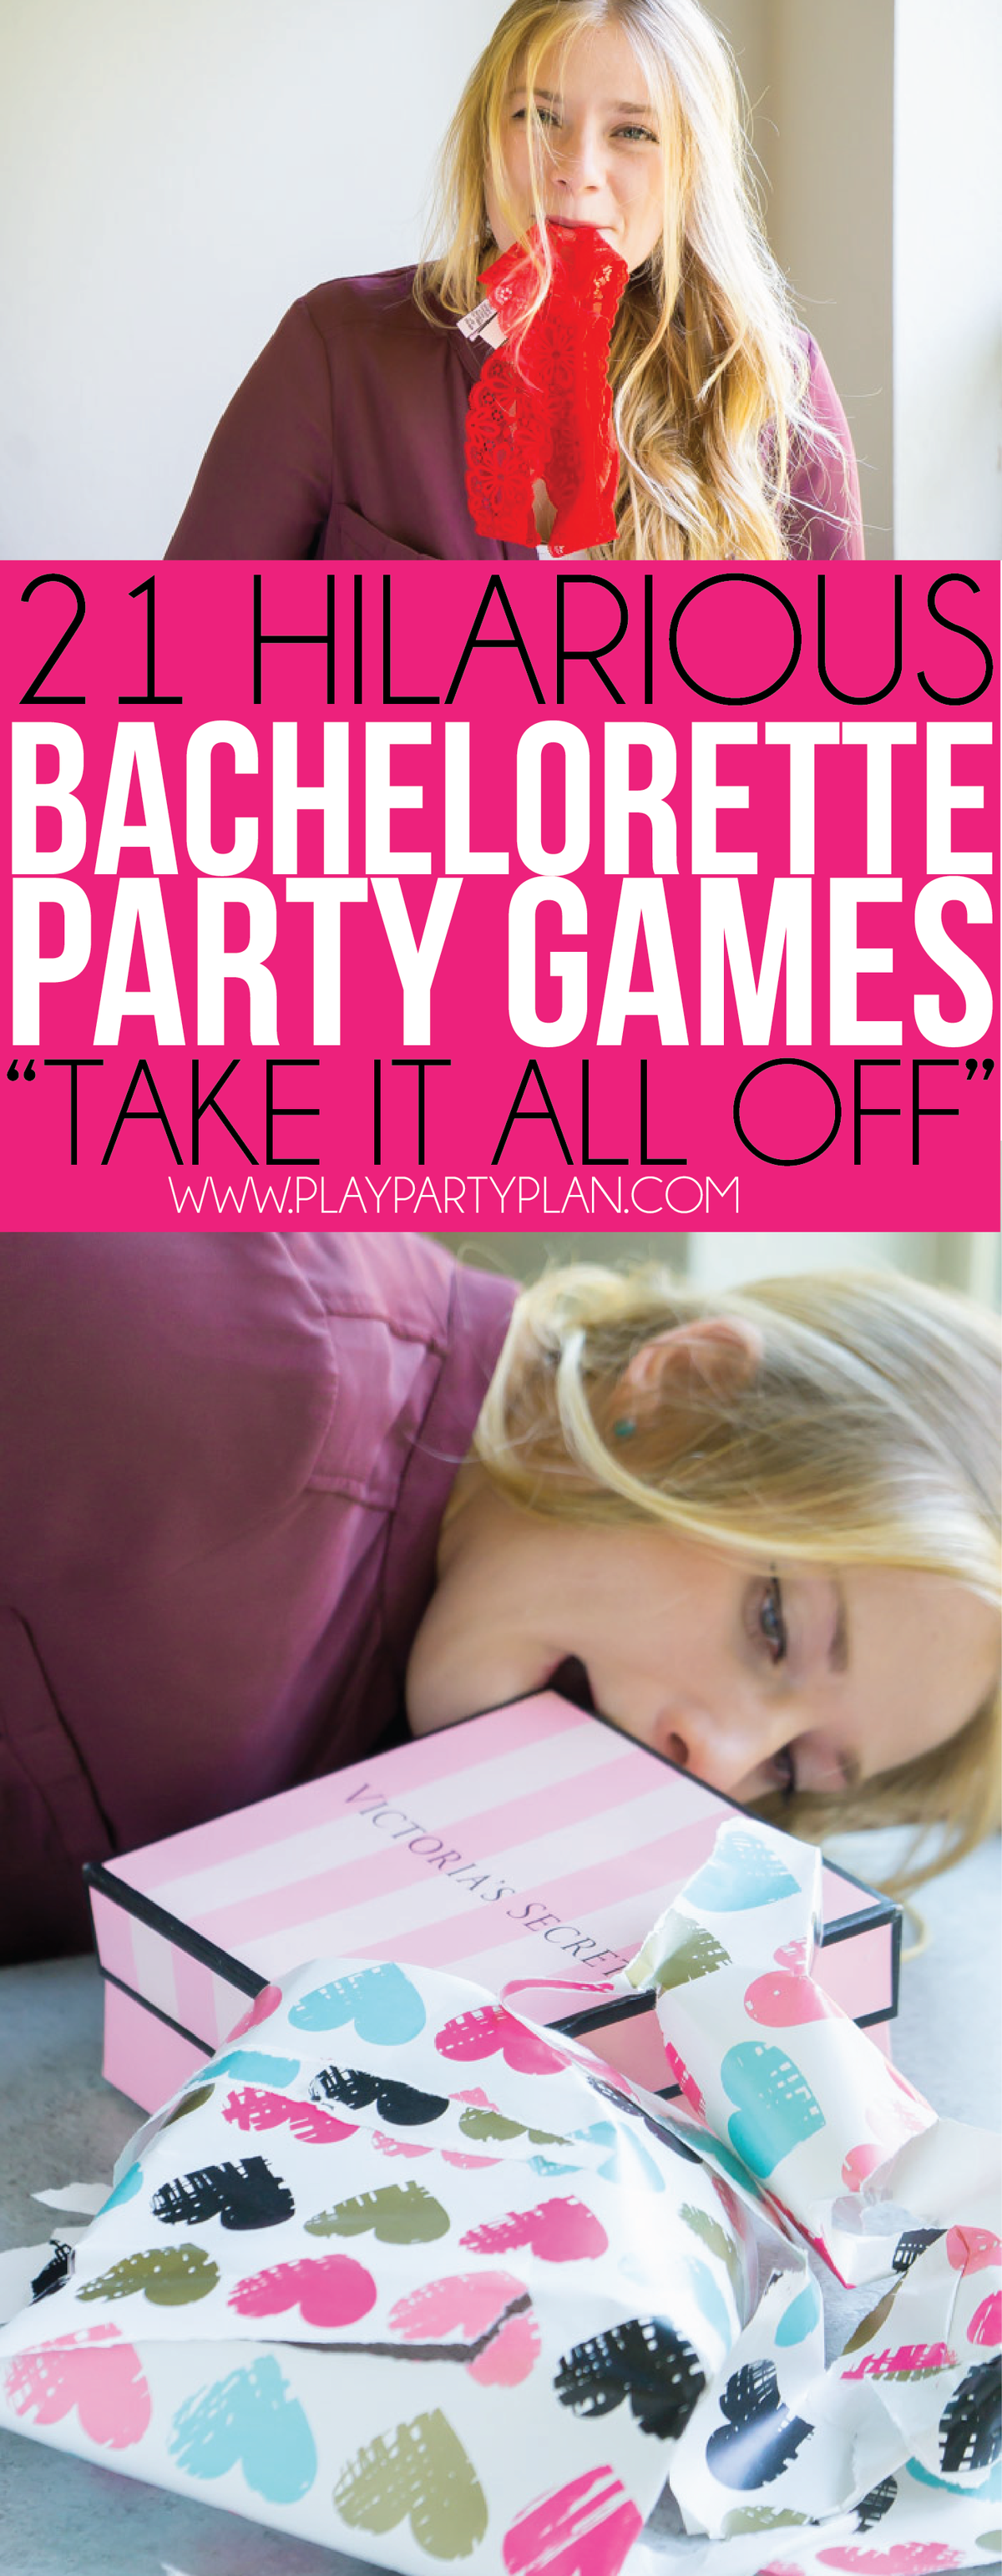 Využite všetky možnosti v týchto zábavných spoločenských hrách s bachelorette